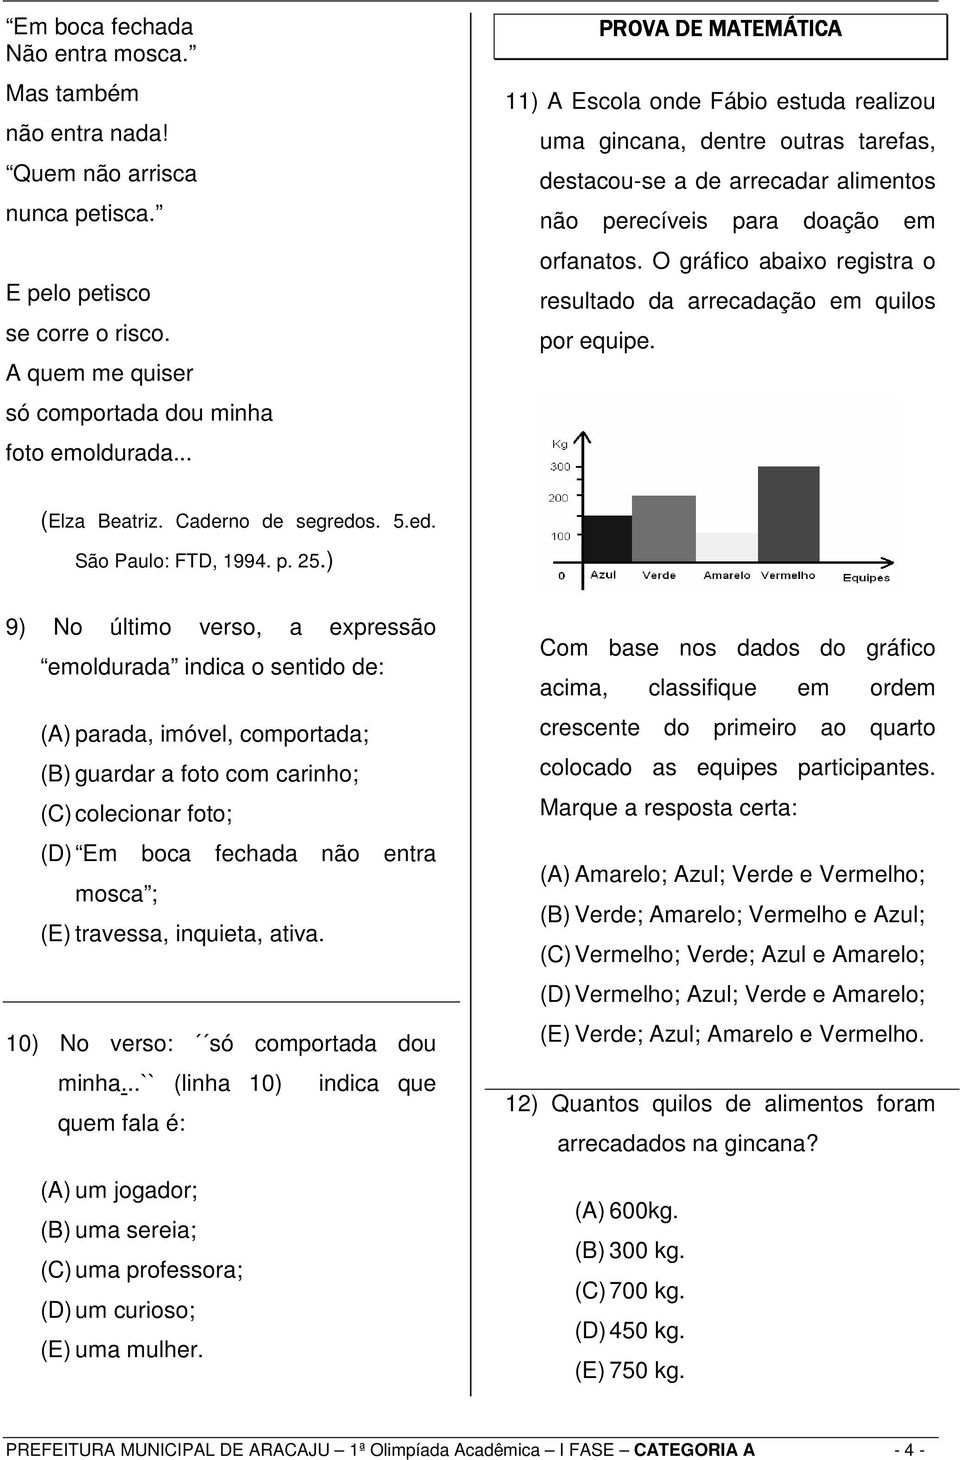 O gráfico abaixo registra o resultado da arrecadação em quilos por equipe. (Elza Beatriz. Caderno de segredos. 5.ed. São Paulo: FTD, 1994. p. 25.